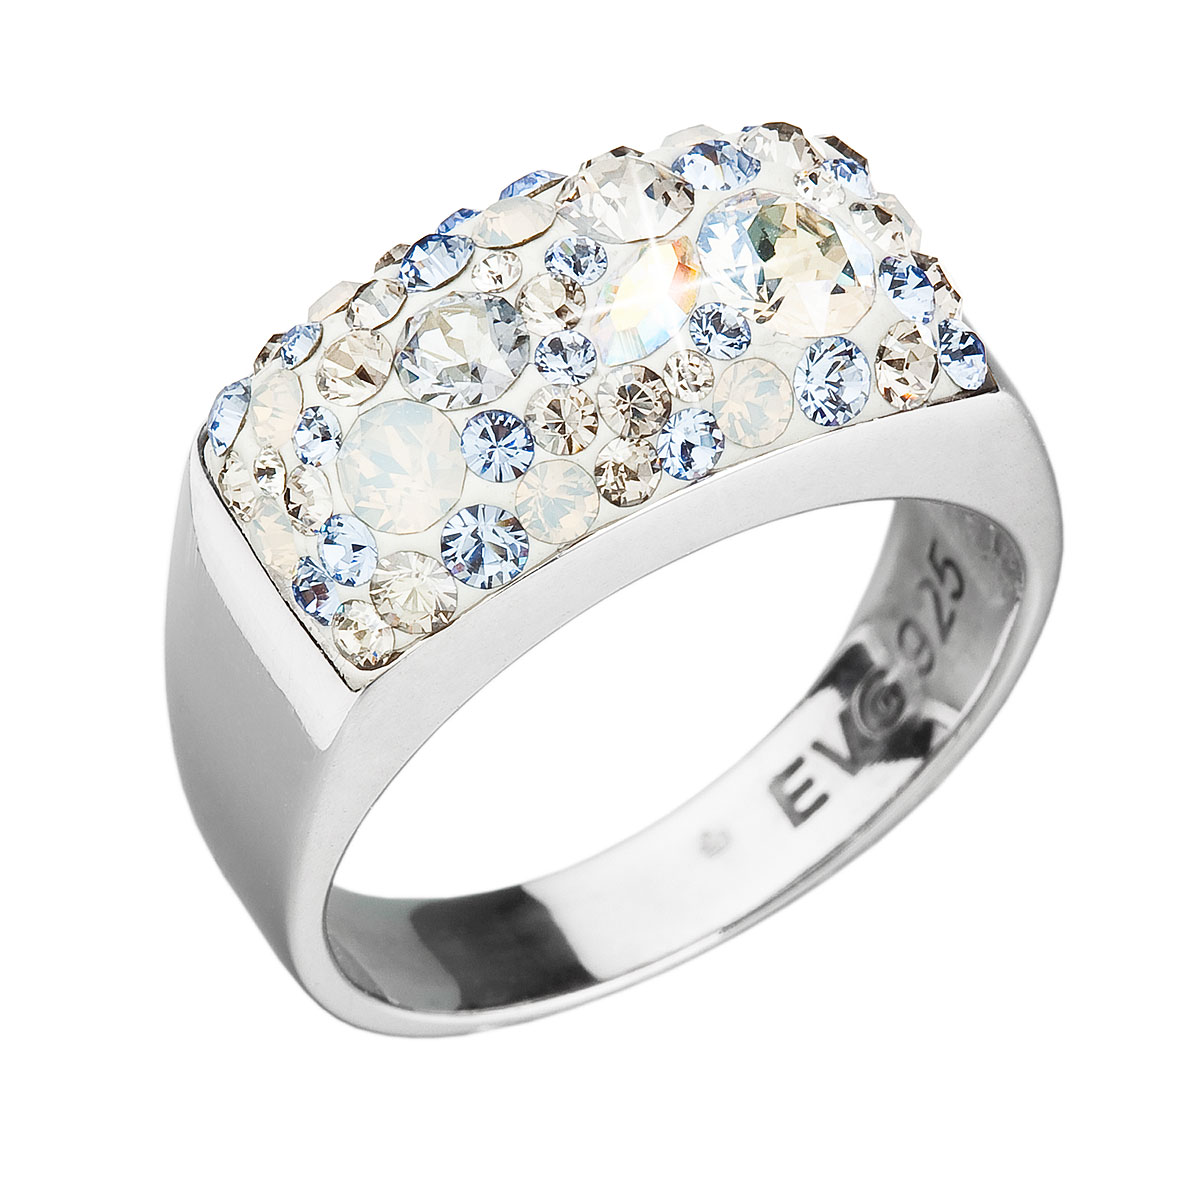 Evolution Group Stříbrný prsten s krystaly Swarovski modrý 35014.3 light sapphire